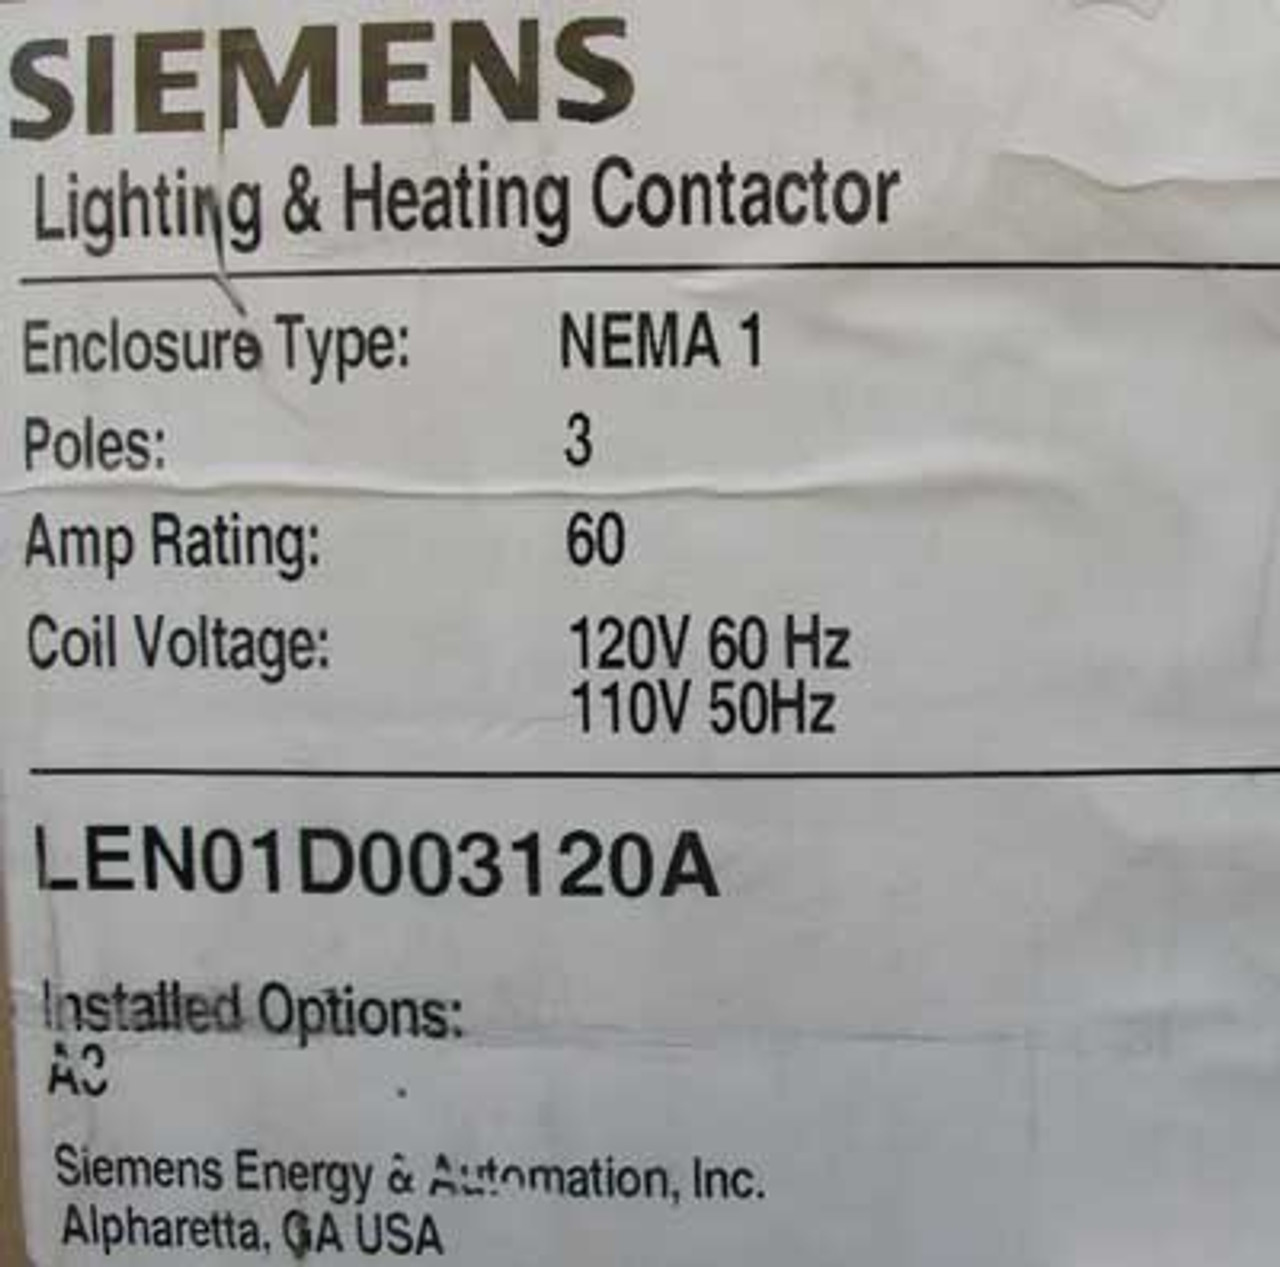 Siemens LEN01D003120A 60 Amp 120V 3 Pole Lighting Contactor NEMA 1 - New